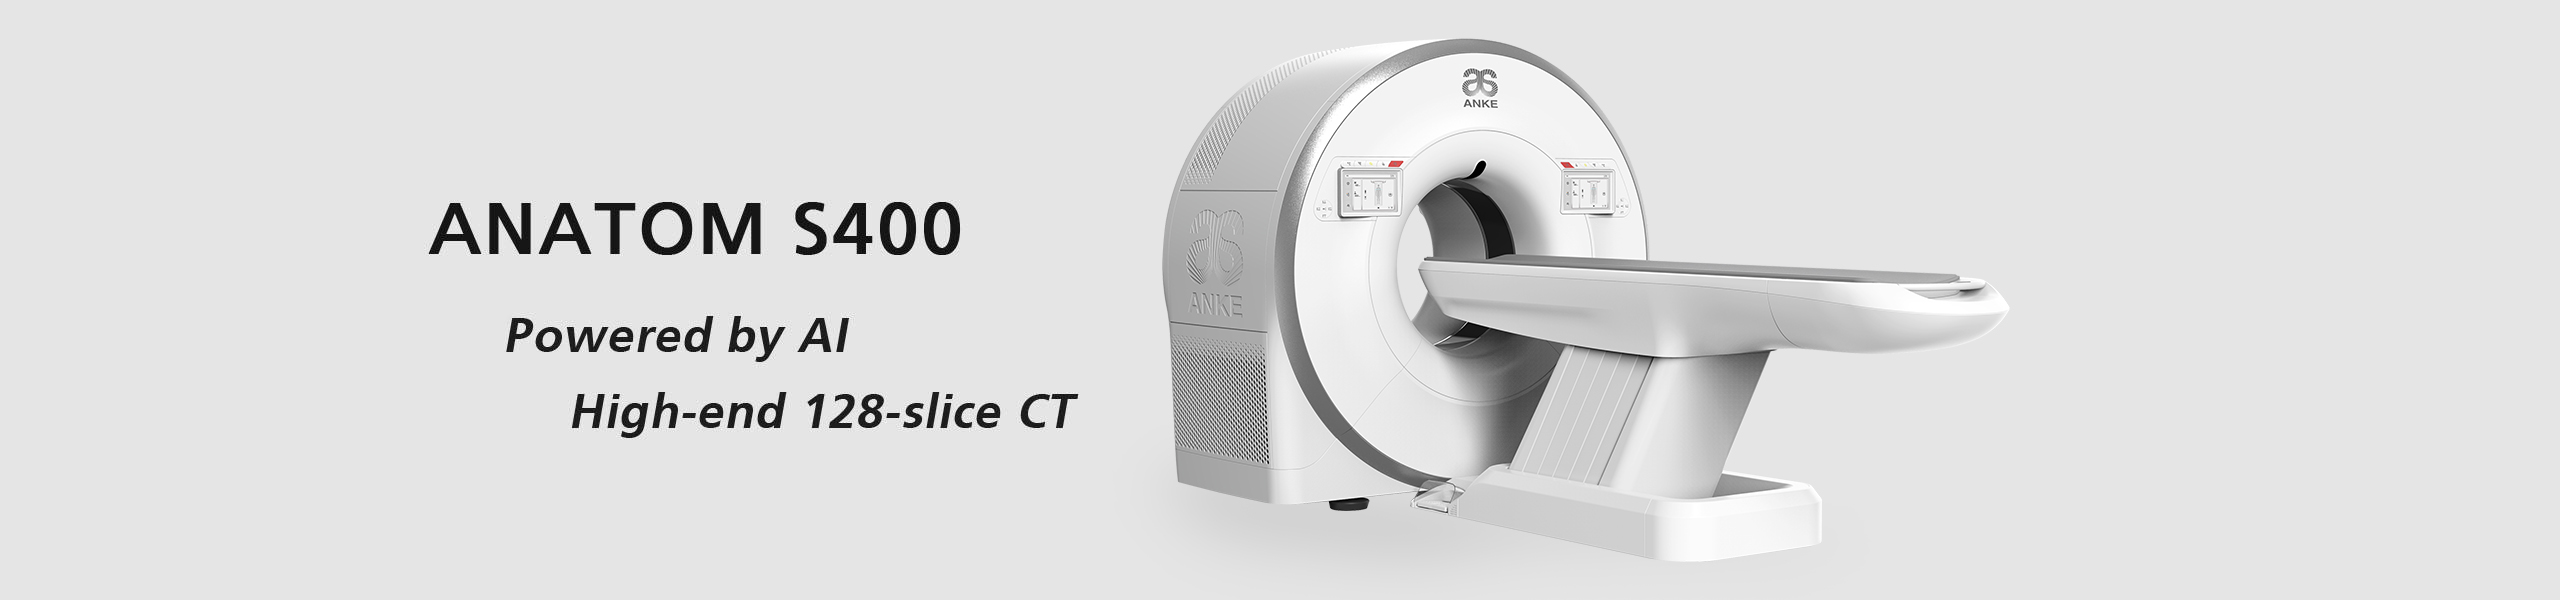 128-slice Spiral CT Scanner